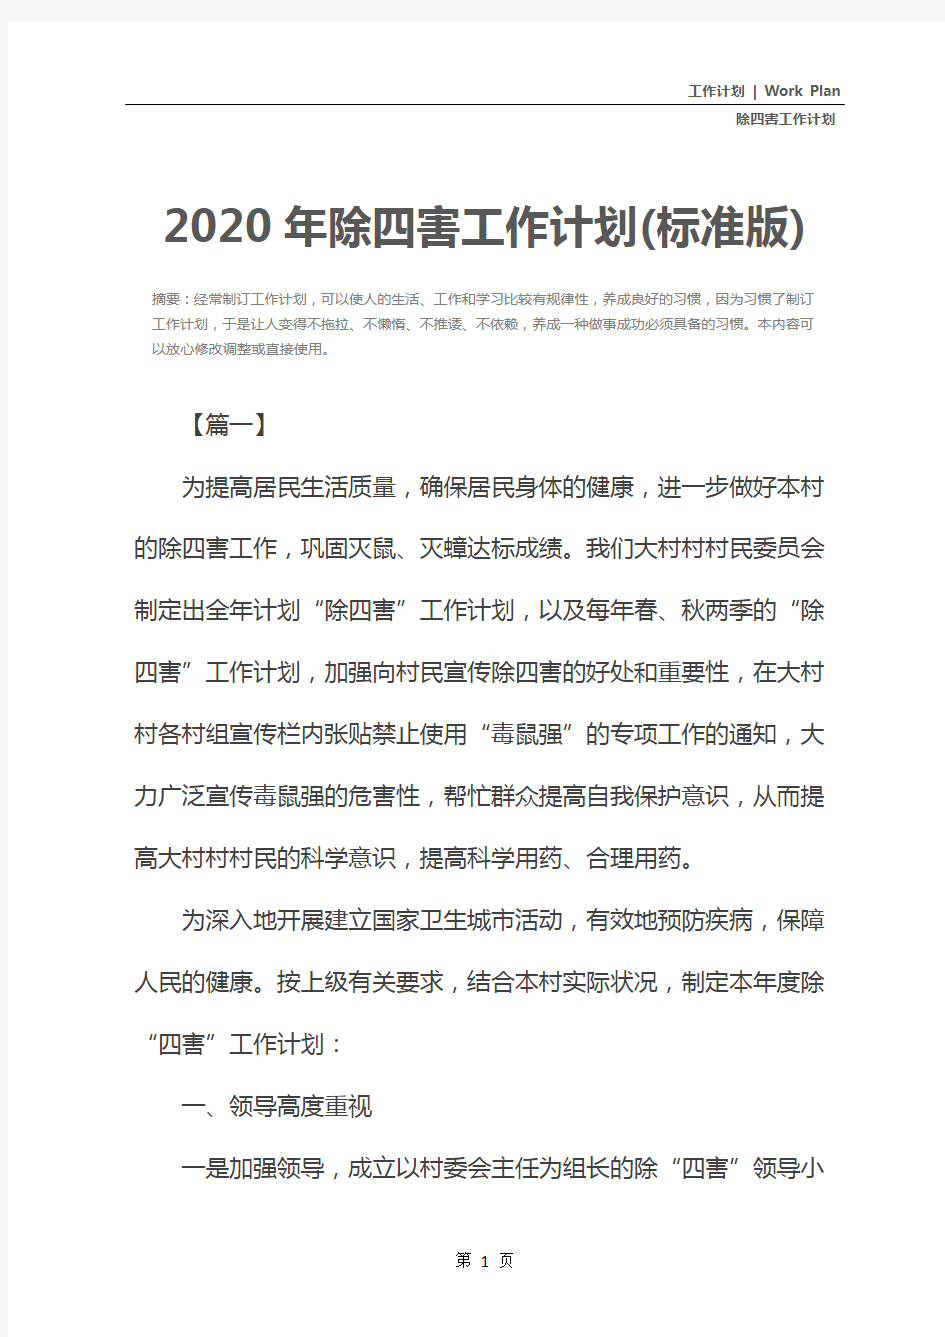 2020年除四害工作计划(标准版)